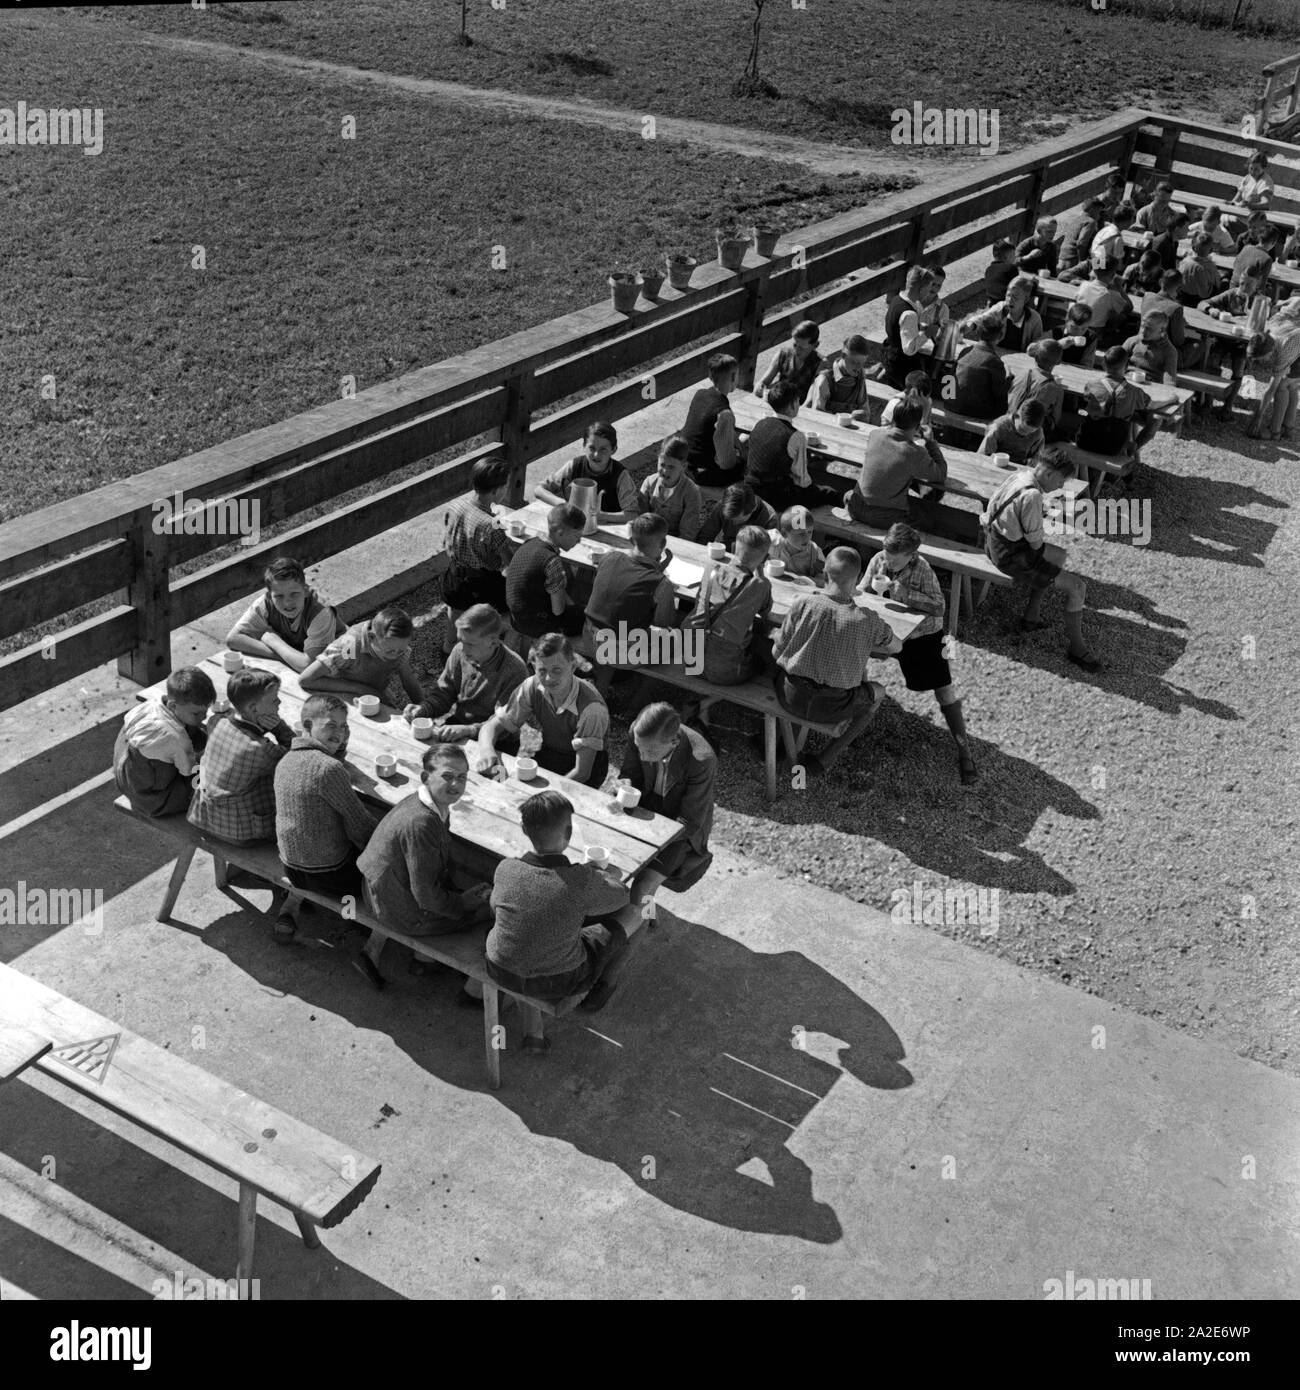 Sarkis Artikel auf der Terrasse der Adolf-Hitler-Jugendherberge in Berchtesgaden in der Sonne und warten auf das Mittagessen, Deutschland 1930er Jahre. Jungs sitzen auf der sonnigen Terrasse des Adolf Hitler Youth Hostel in Berchtesgaden und für ihr Mittagessen warten, Deutschland 1930. Stockfoto